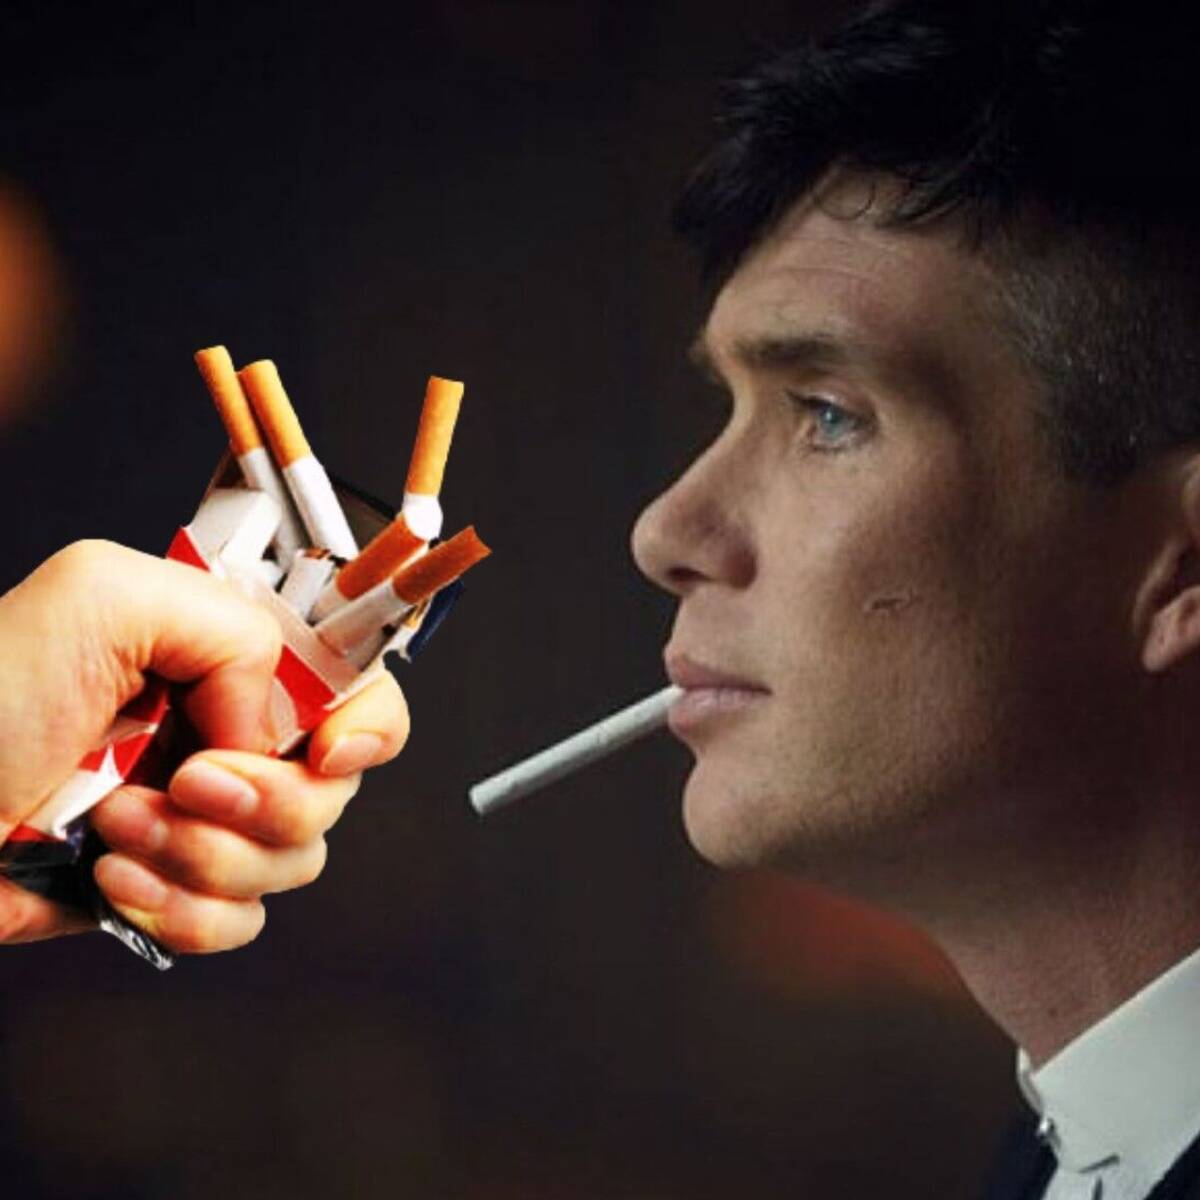 ¿Cuántos cigarrillos fuma el actor de Peaky Blinders